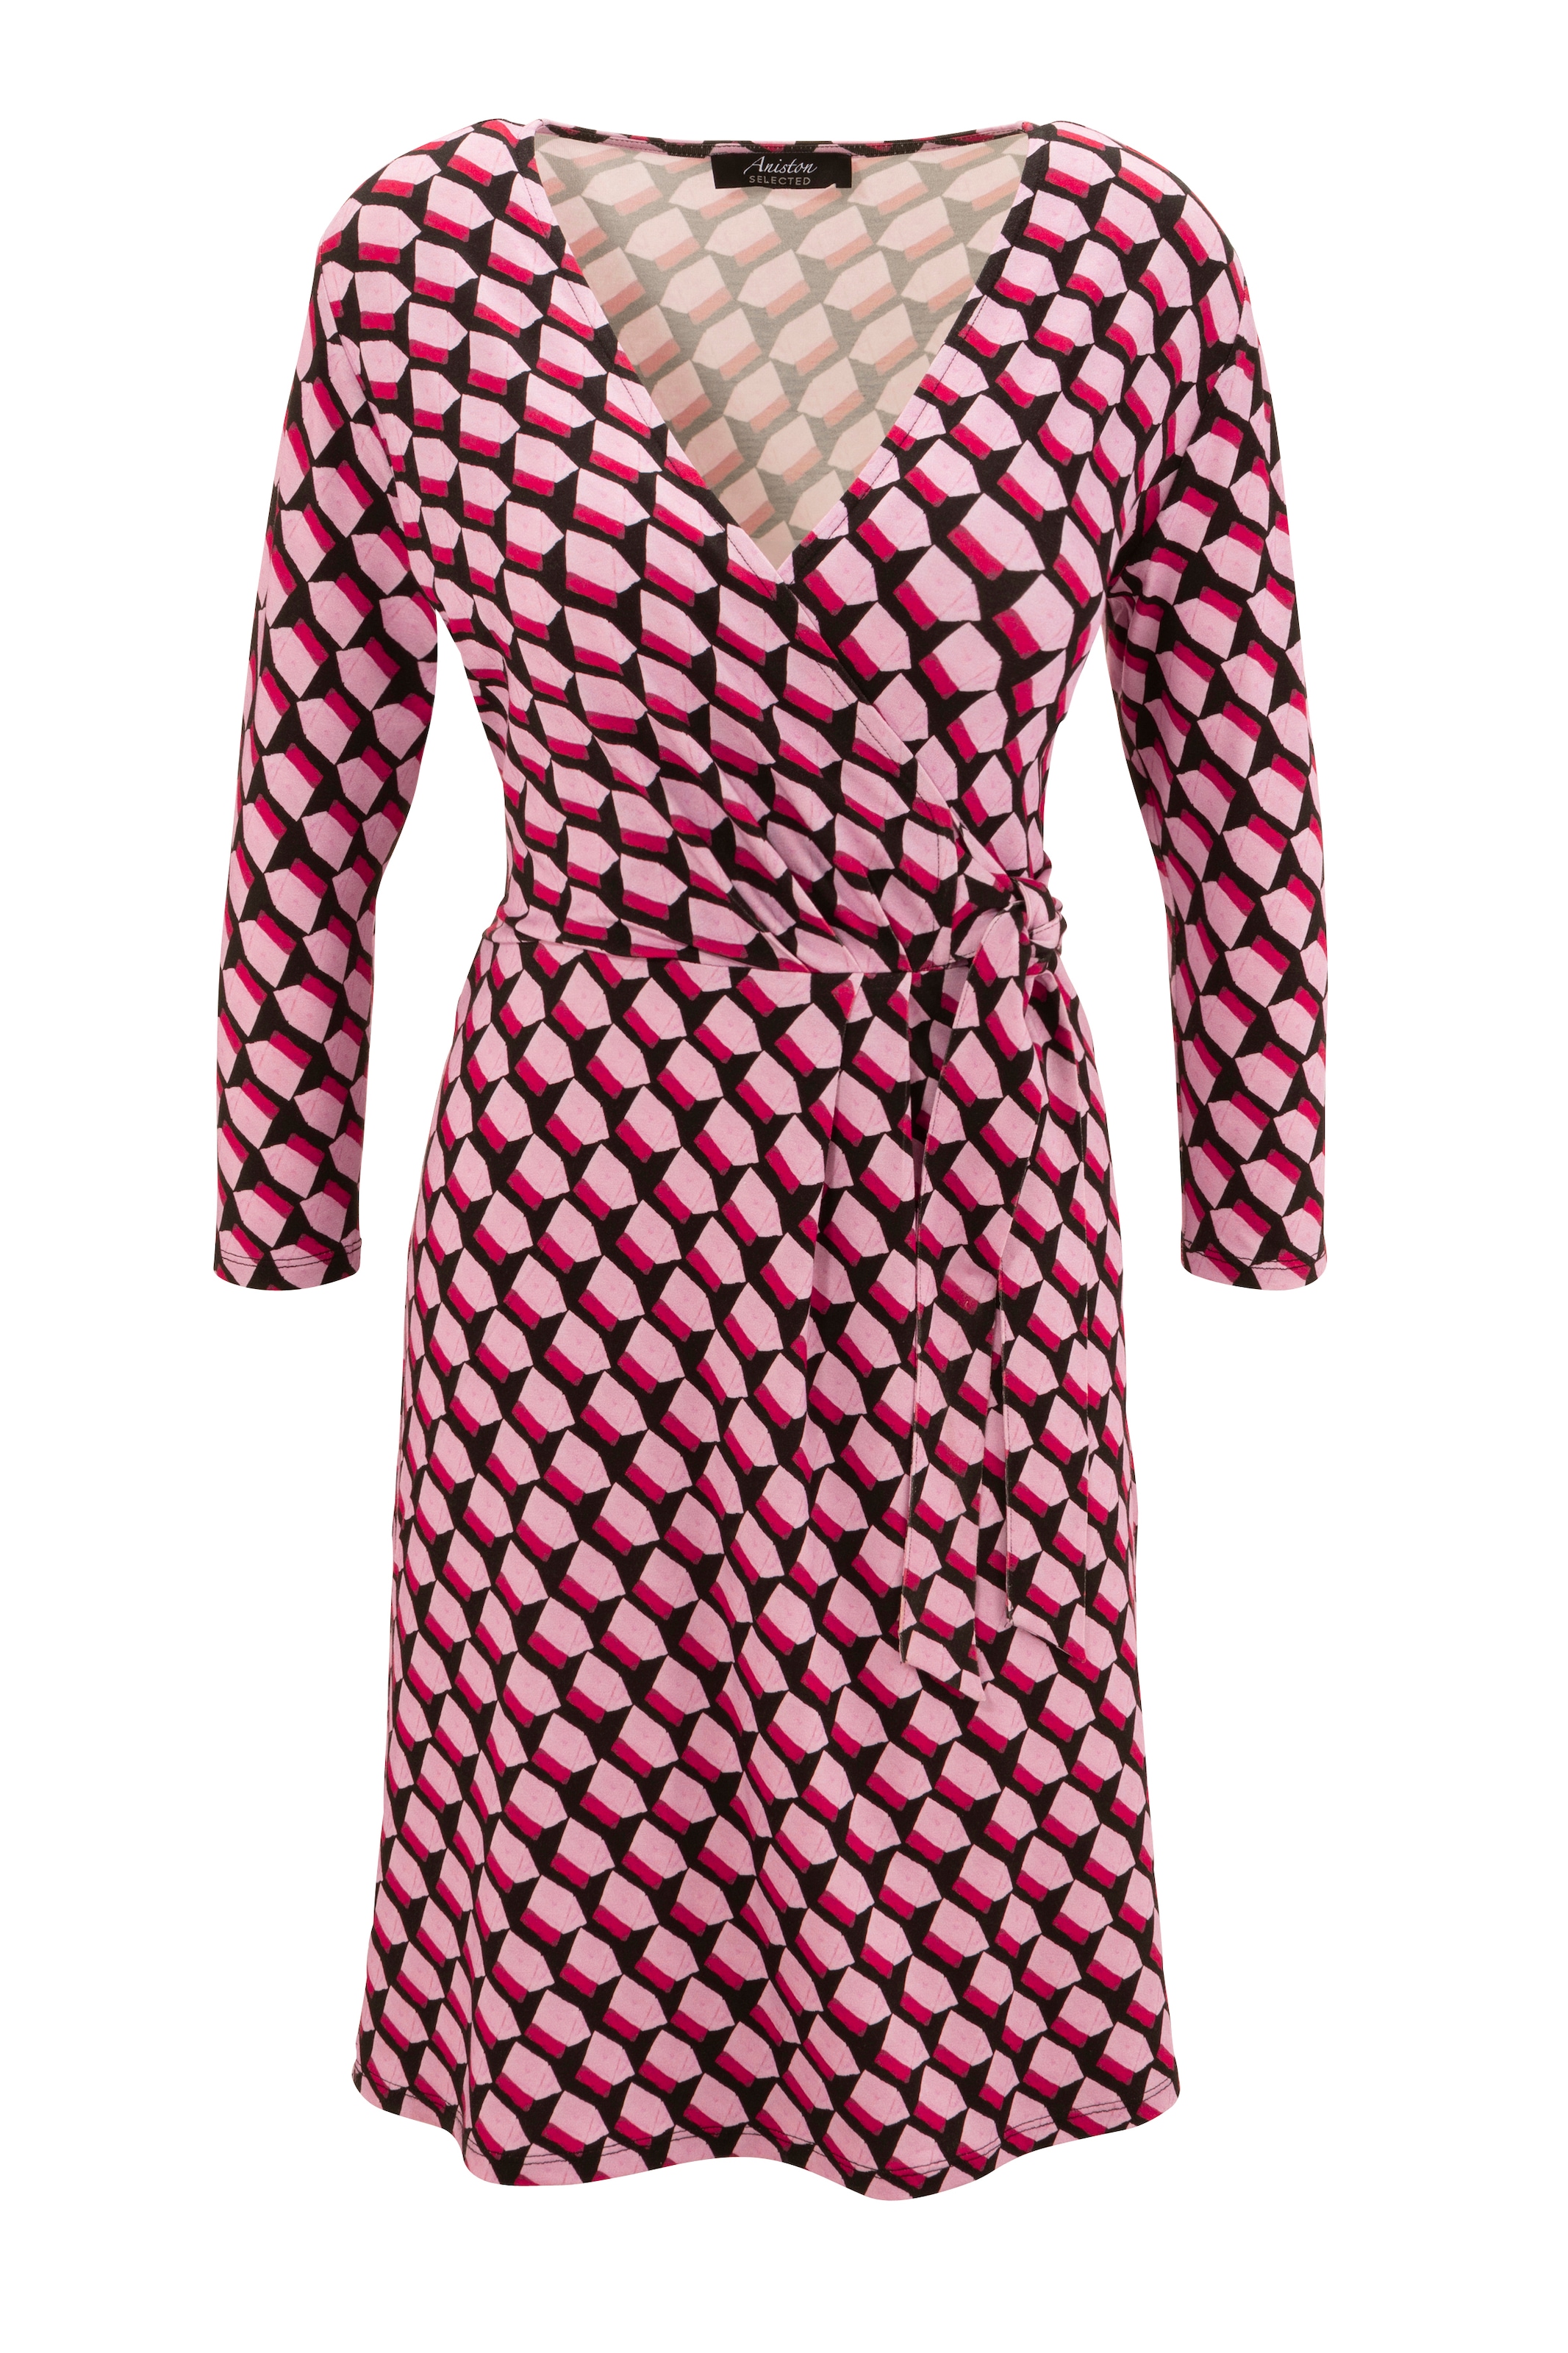 Wickeloptik in Allover-Muster Aniston kaufen walking Jerseykleid, SELECTED Ausschnitt und I\'m mit |